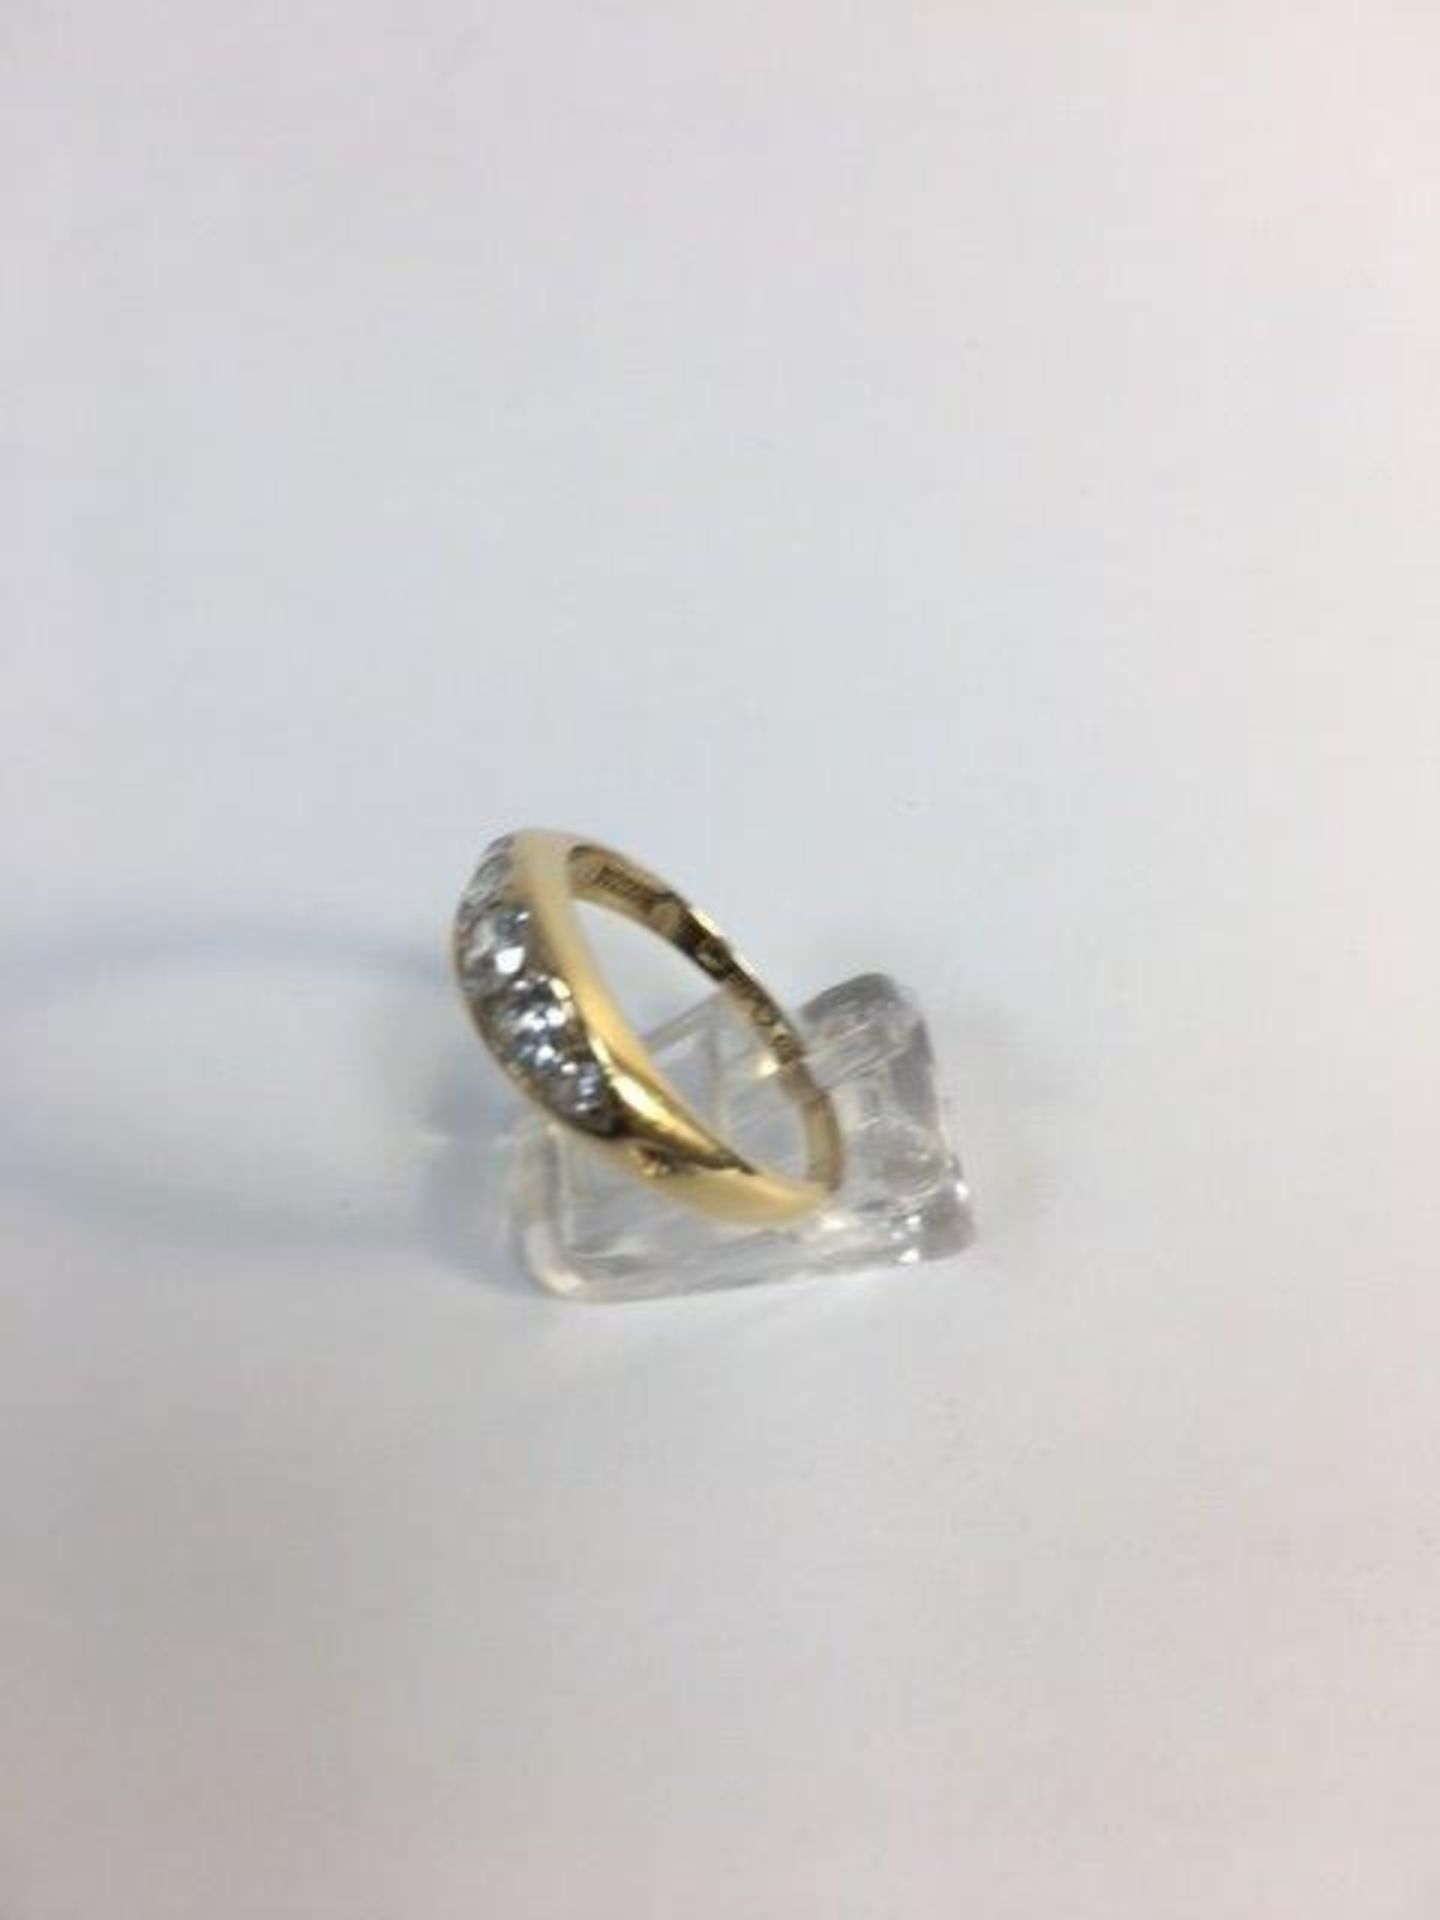 Edwardian 5 stone diamond ring - Image 2 of 3